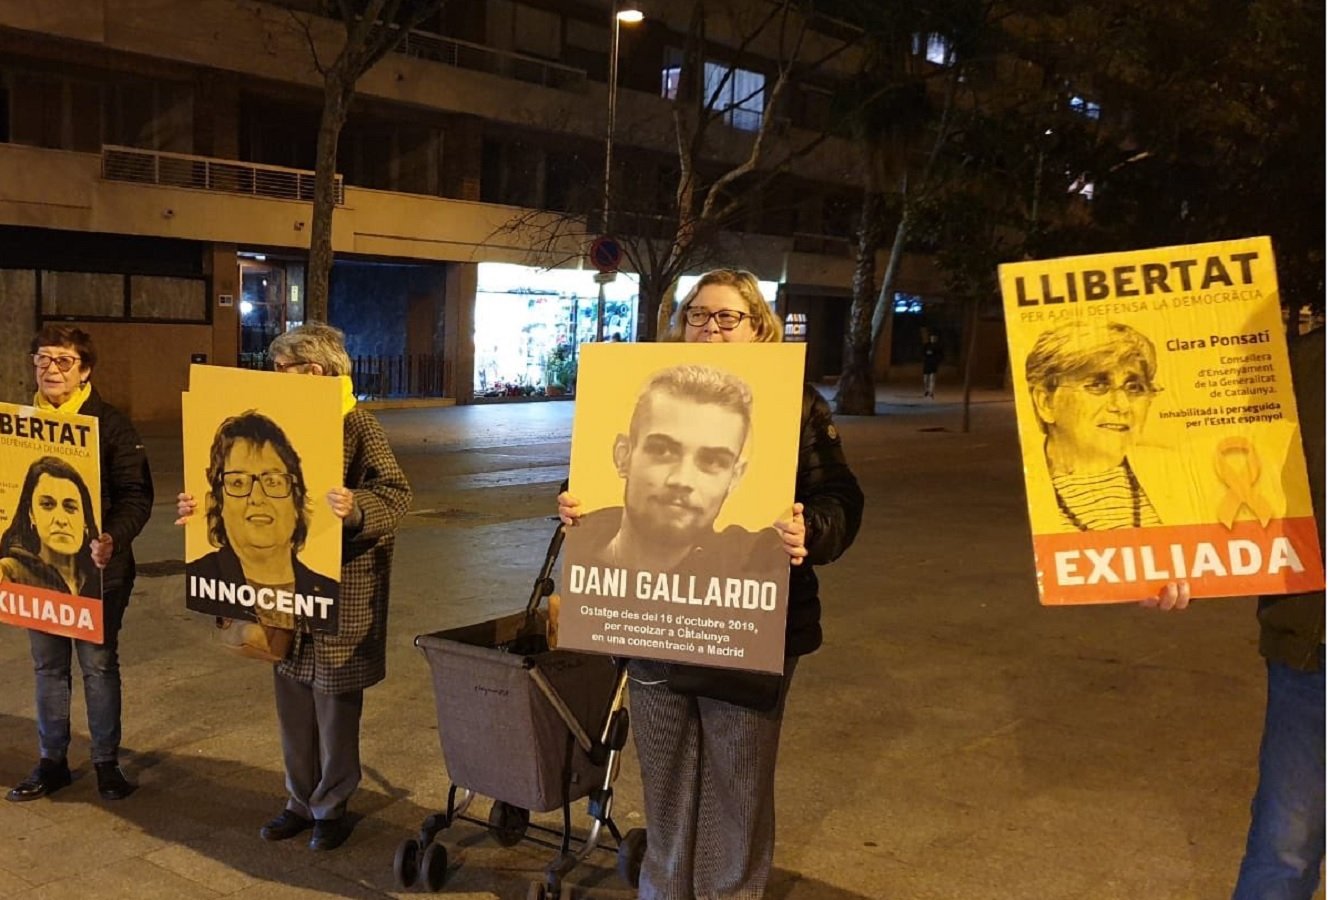 El Supremo condena a Dani Gallardo a 4 años de prisión por la protesta a la sentencia del 'procés' en Madrid